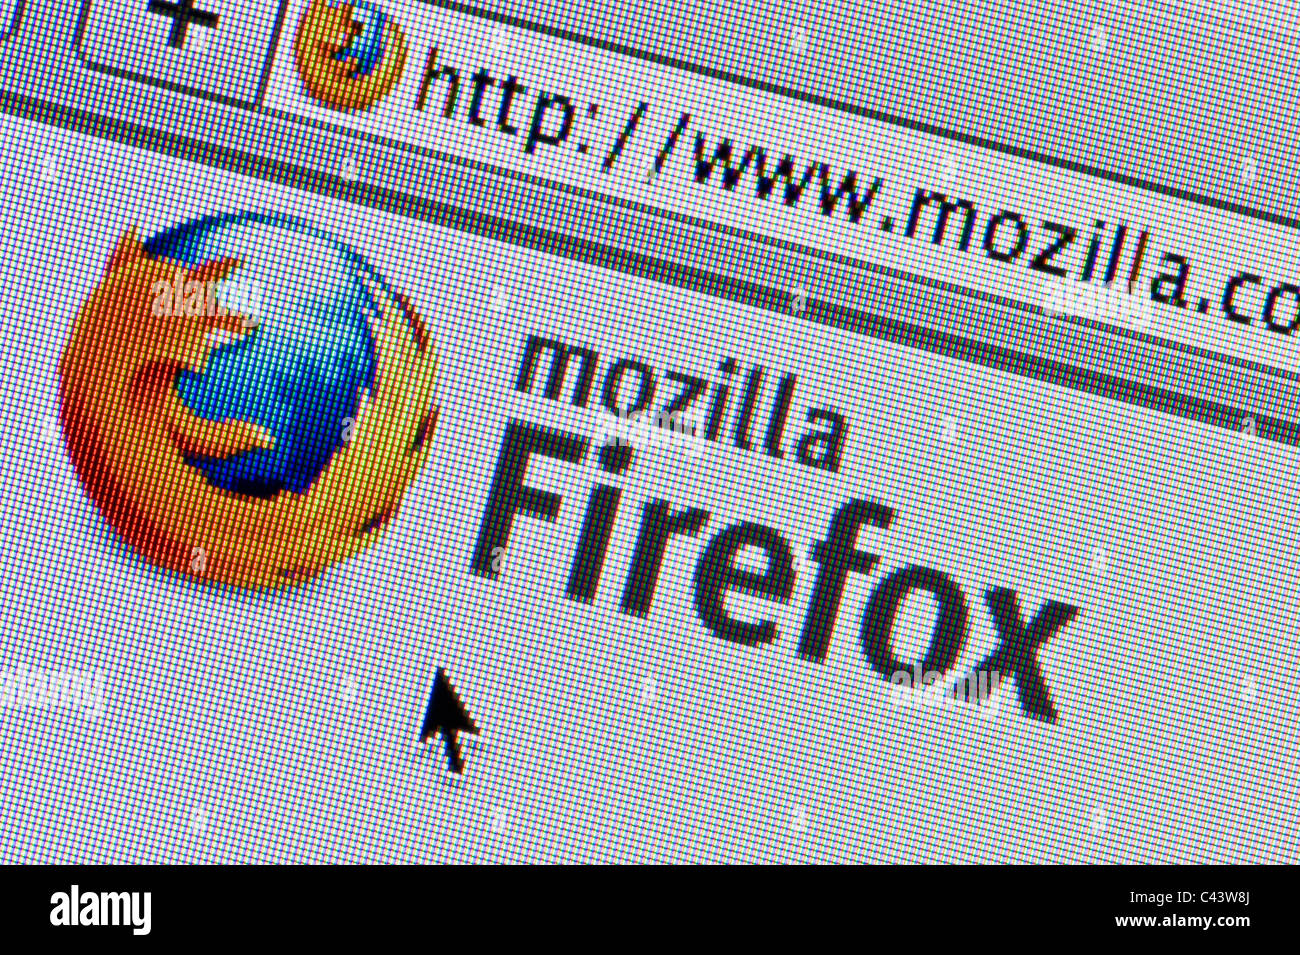 Firefox immagini e fotografie stock ad alta risoluzione - Alamy